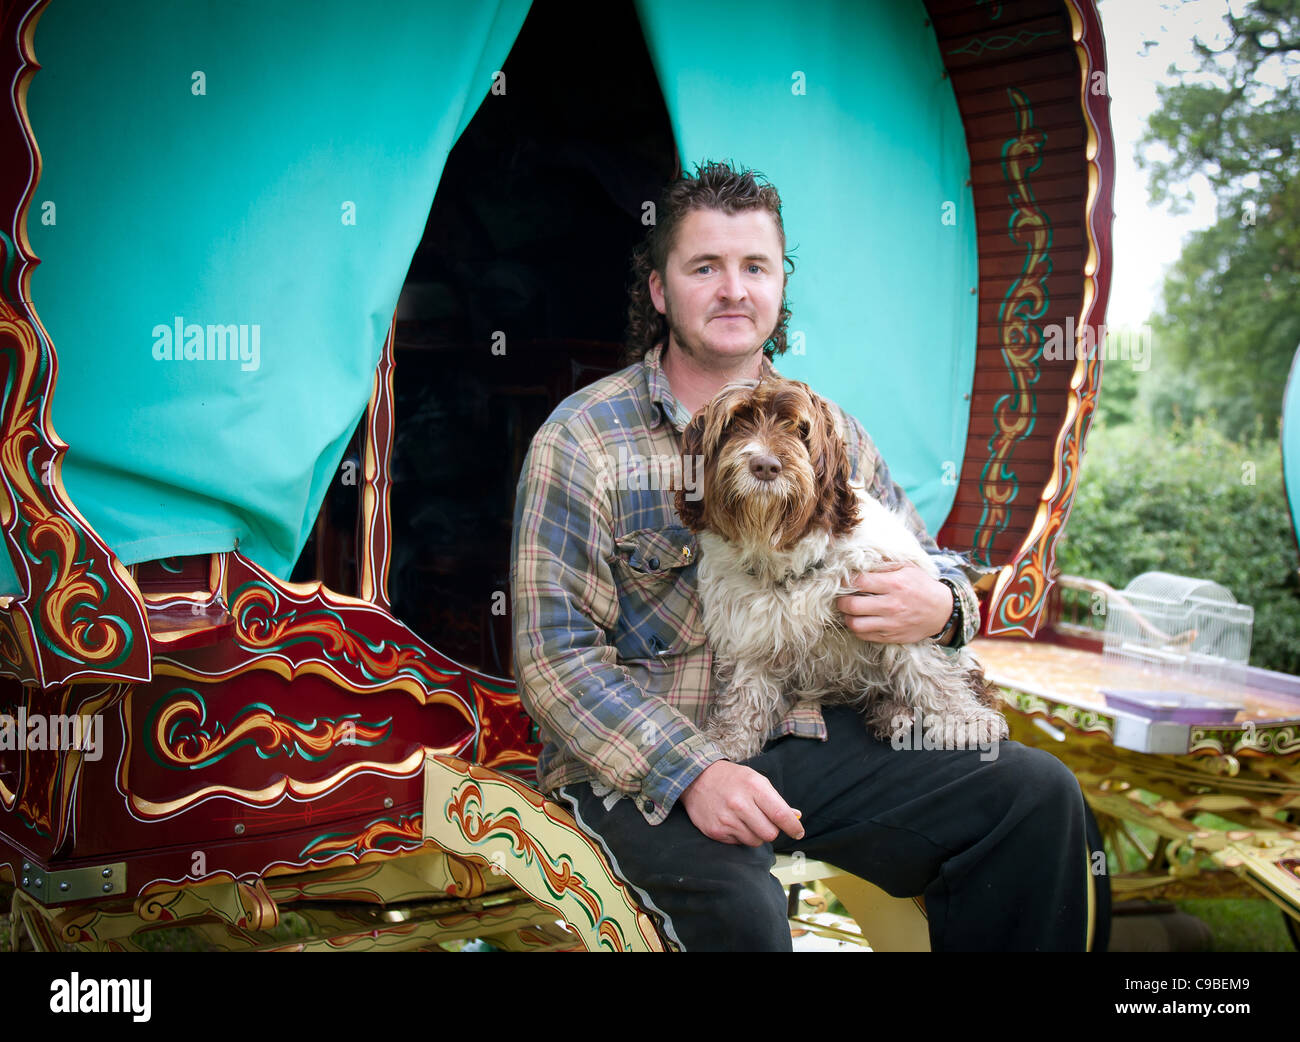 Gypsy traveler with Romany caravan, Cheshire, UK Stock Photo